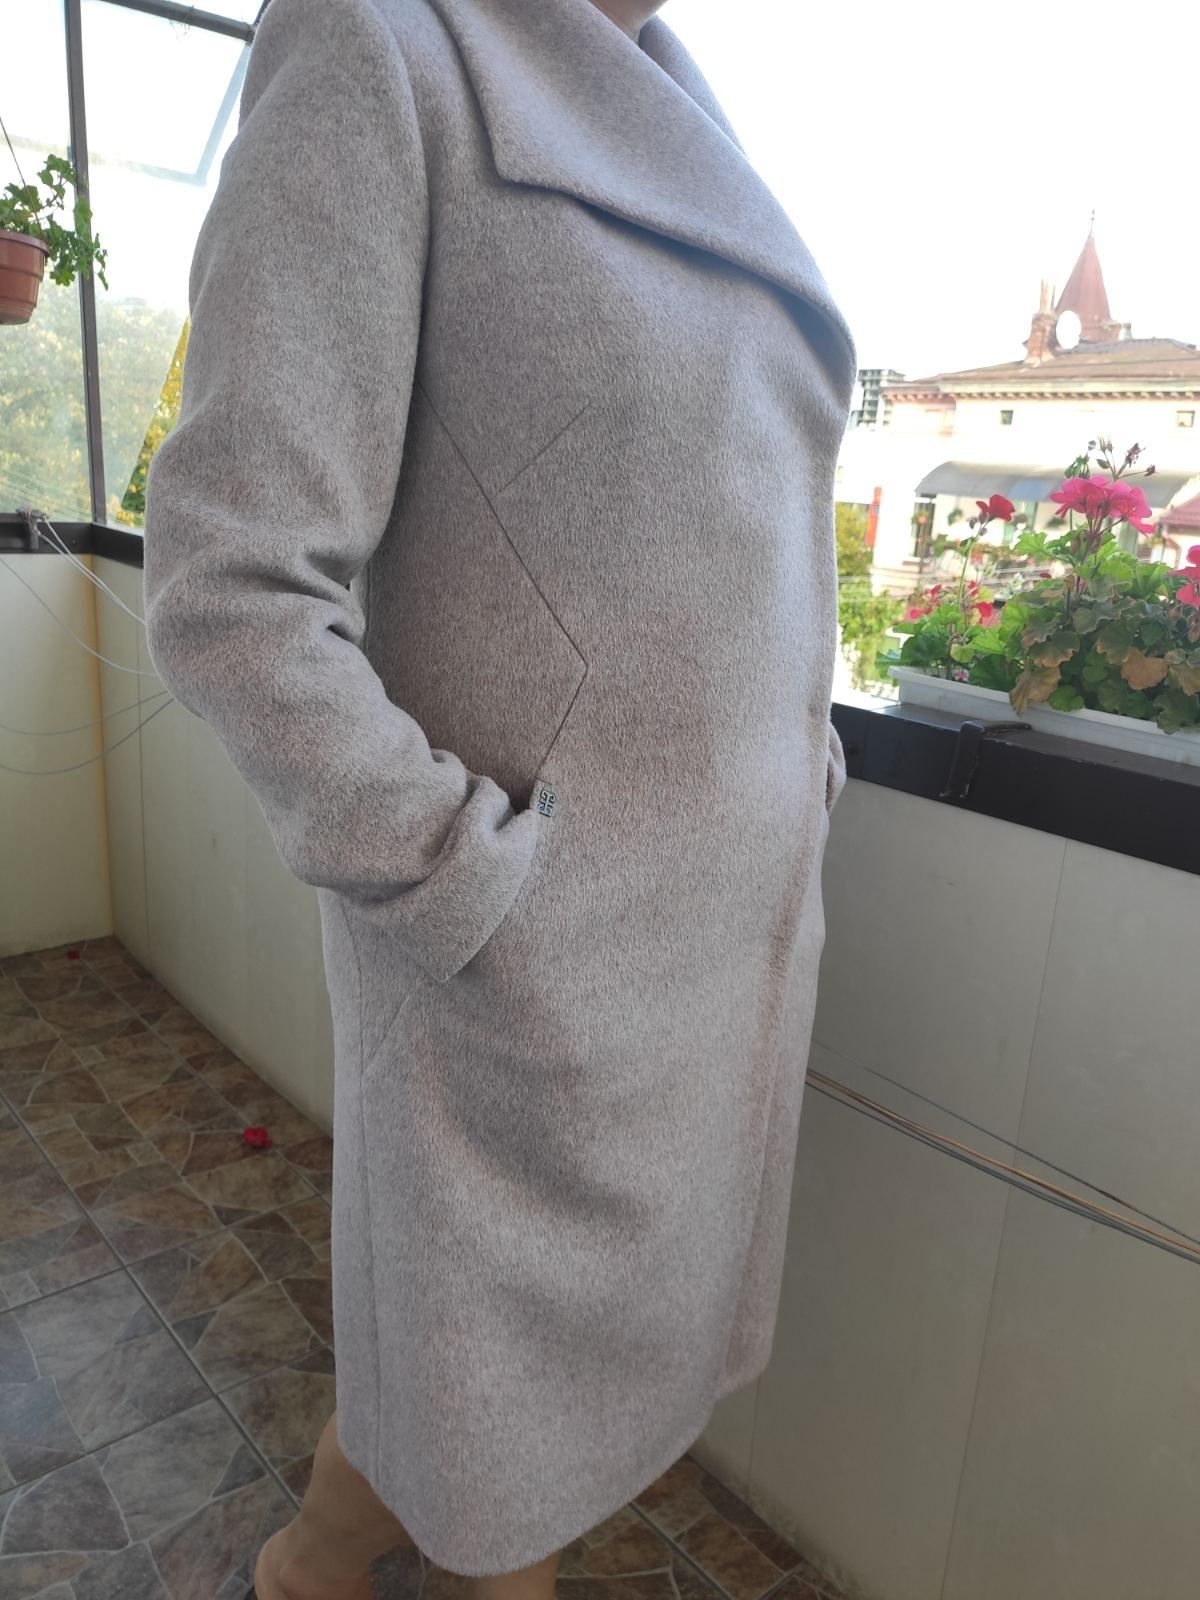 Жіночий осінній / зимовий плащ, пальто демісезонне розмір 46 як нове